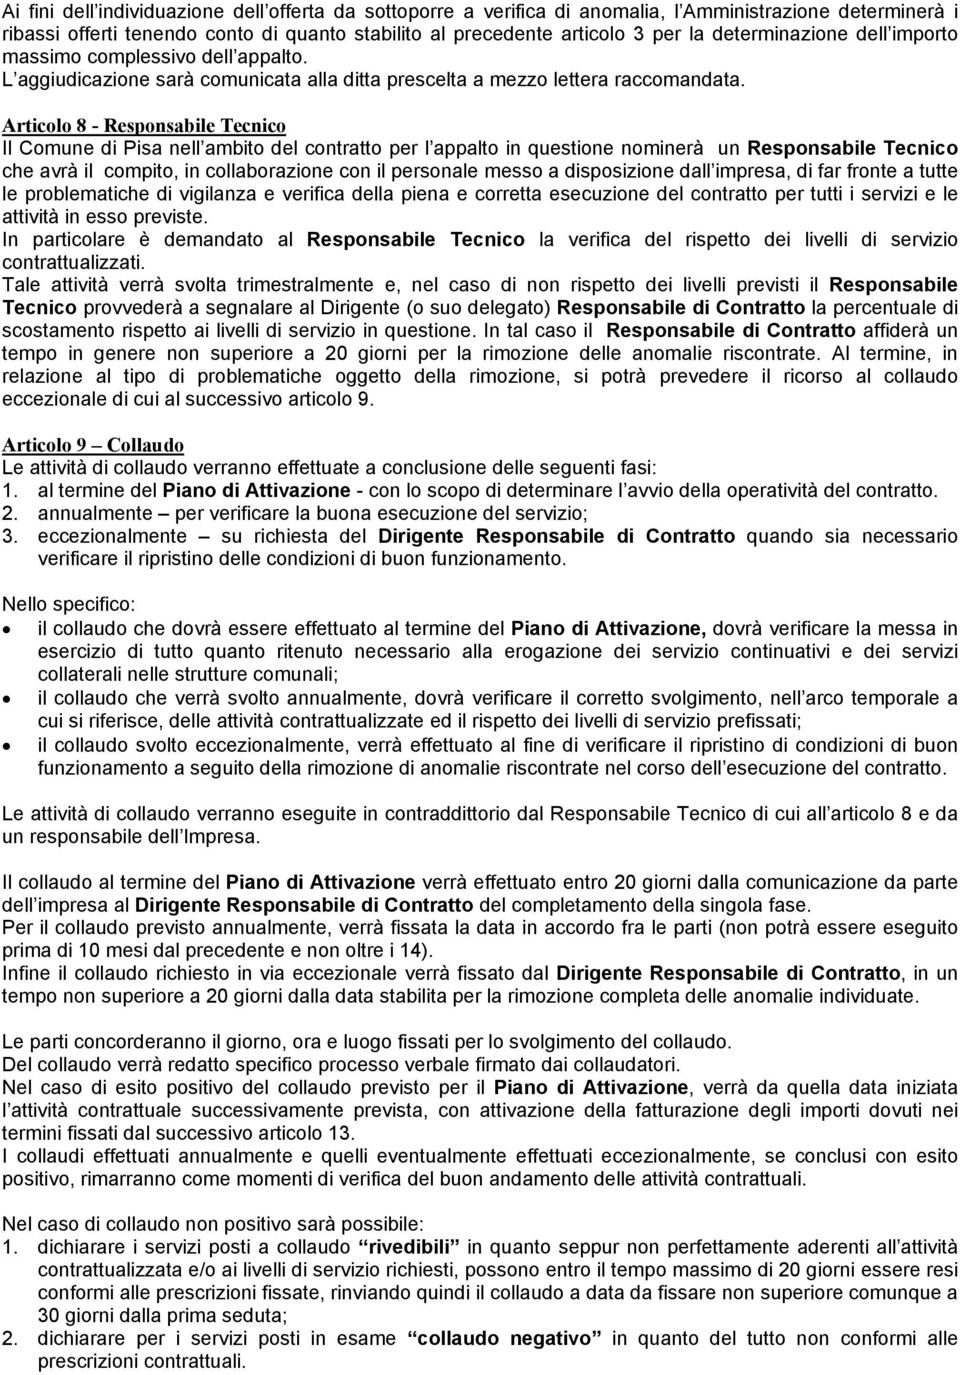 Articolo 8 - Responsabile Tecnico Il Comune di Pisa nell ambito del contratto per l appalto in questione nominerà un Responsabile Tecnico che avrà il compito, in collaborazione con il personale messo